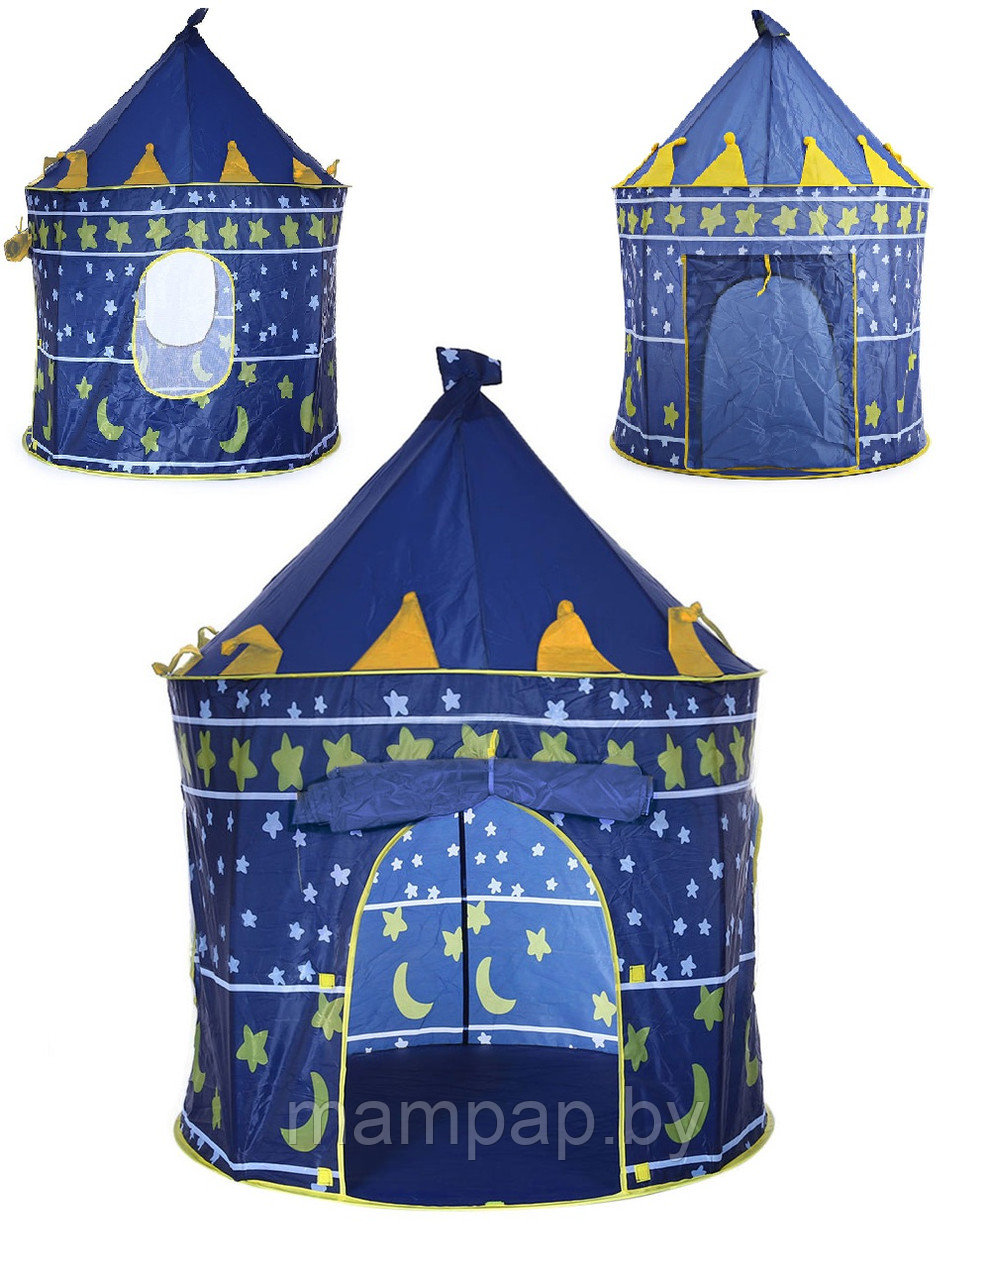 Детская игровая палатка "Замок" синяя